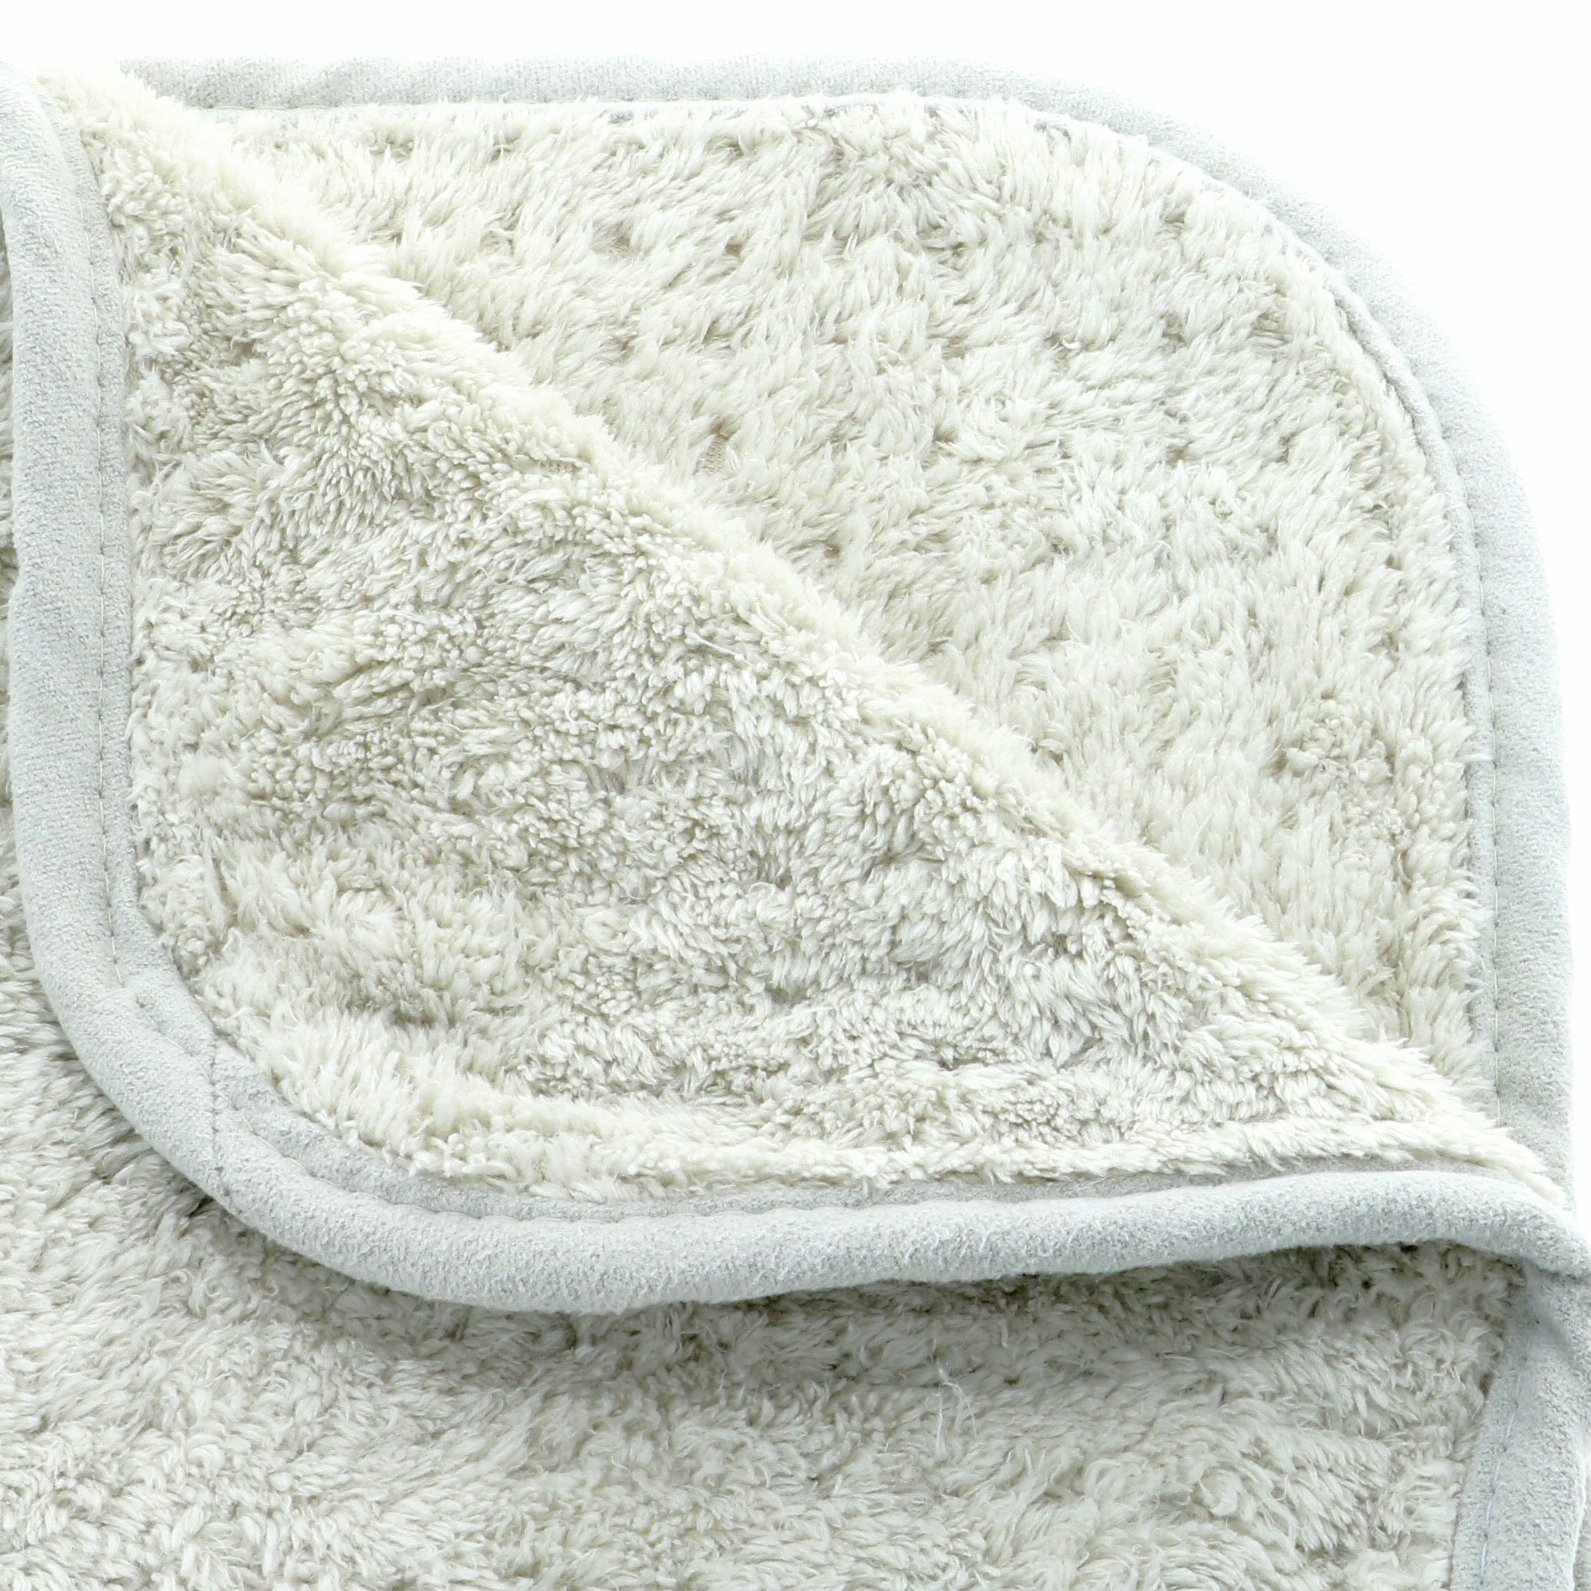 Platinum Pluffle Premium Detailing Towel - 51x105cm